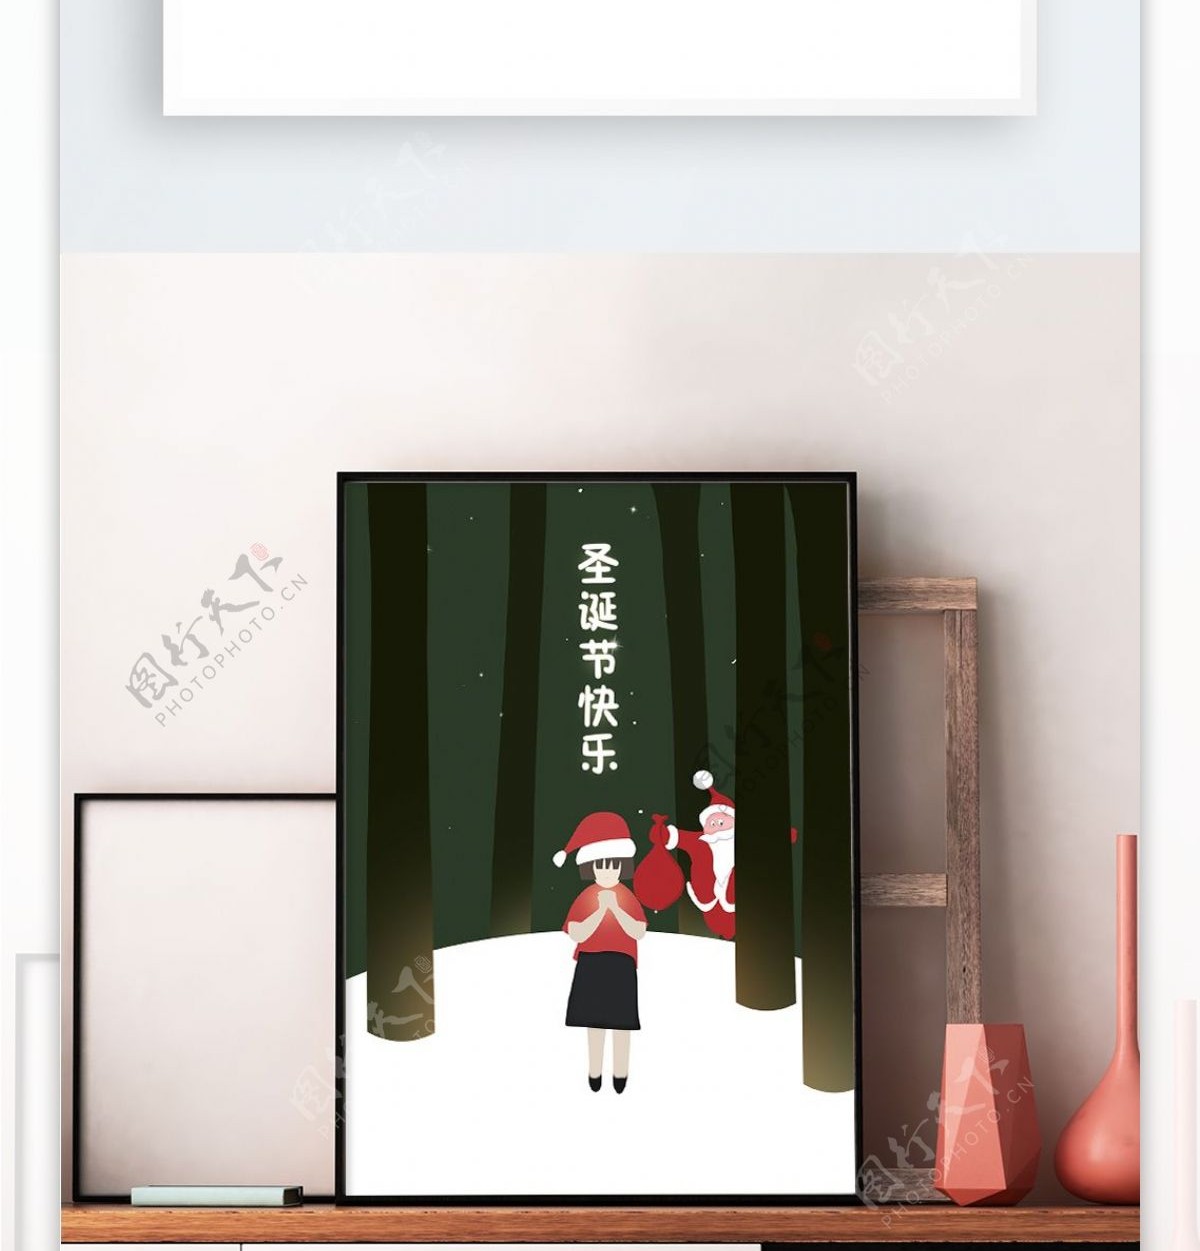 原创插画圣诞节渴望礼物的小女孩微信配图海报